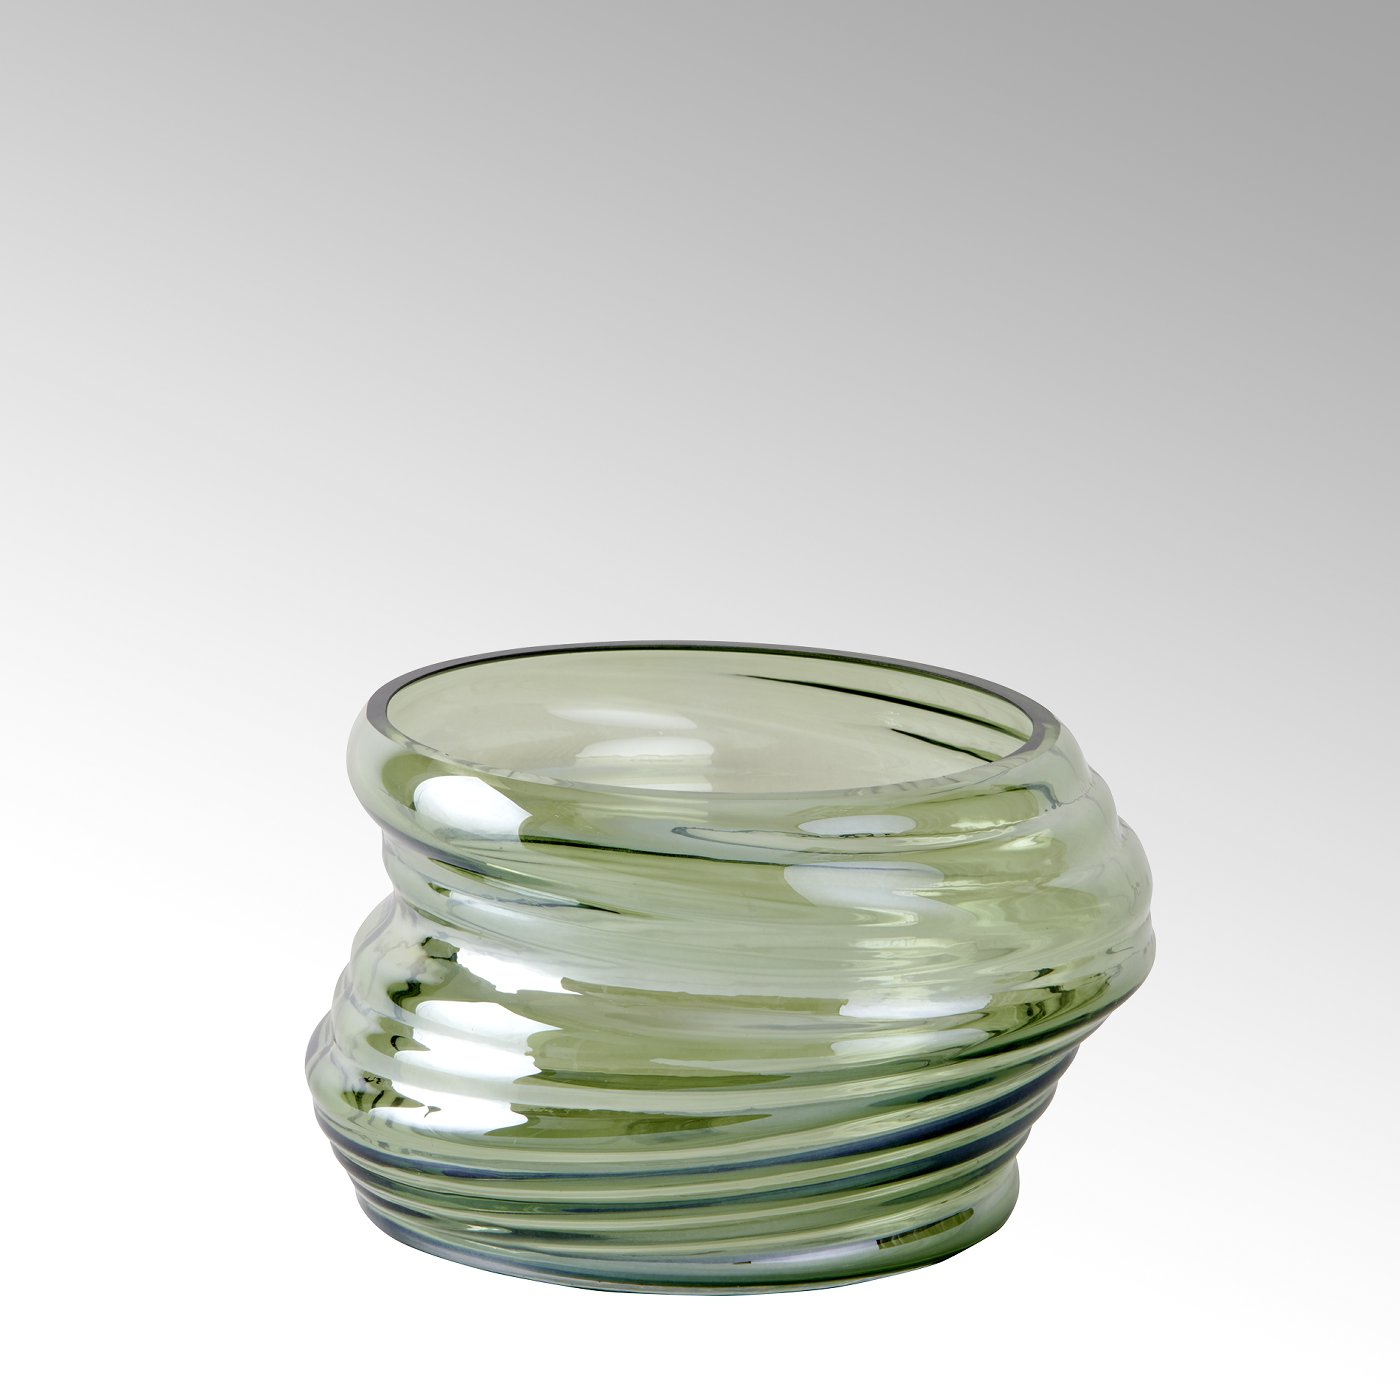 Tony sling glass vase medium